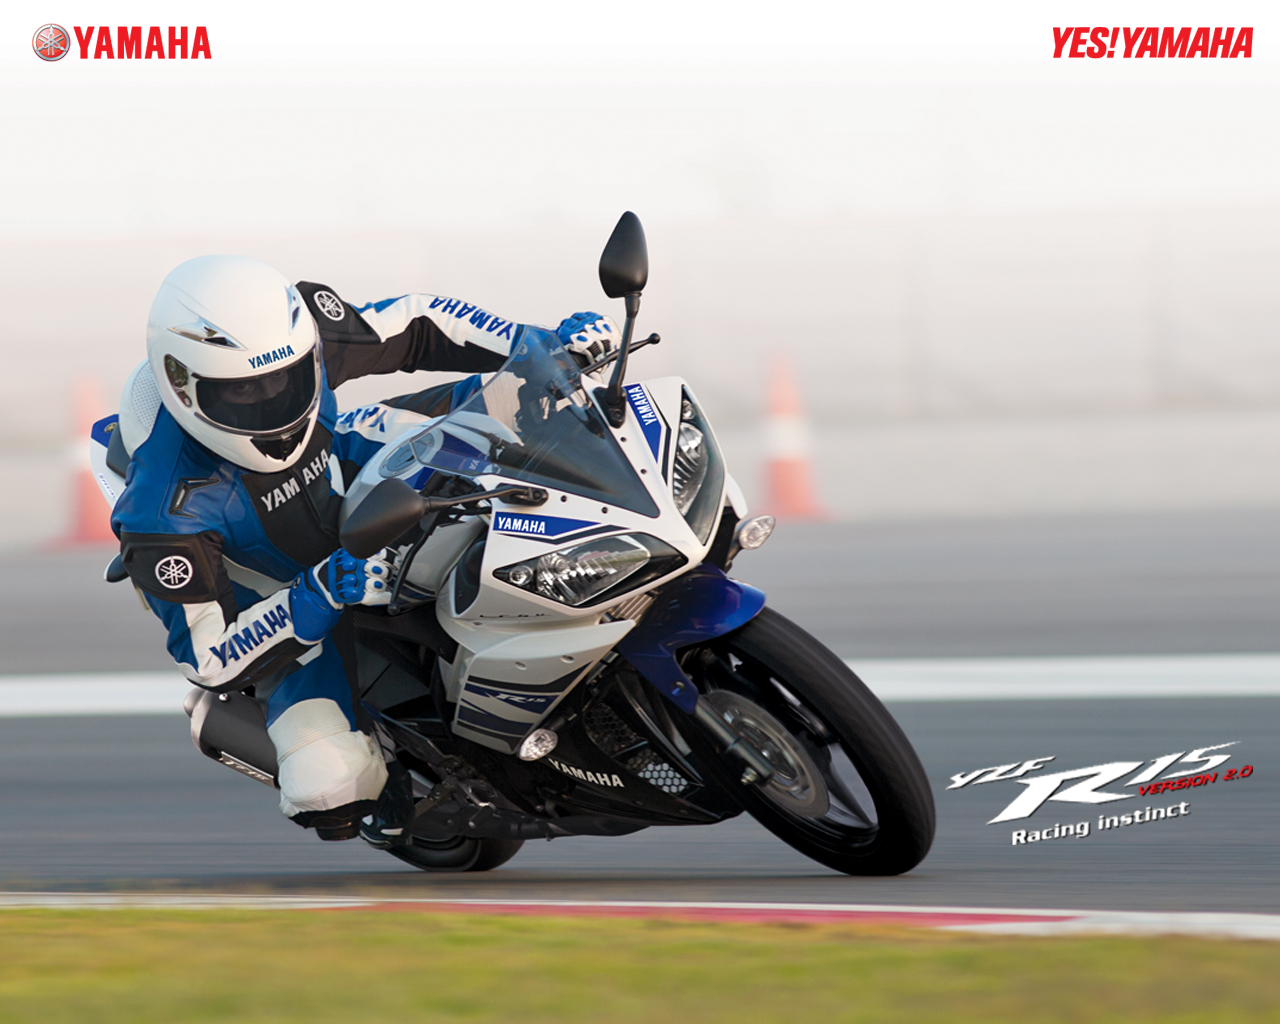 yamaha r15 version 2.0 hintergrundbilder,landfahrzeug,fahrzeug,motorrad,superbike rennen,straßenrennen